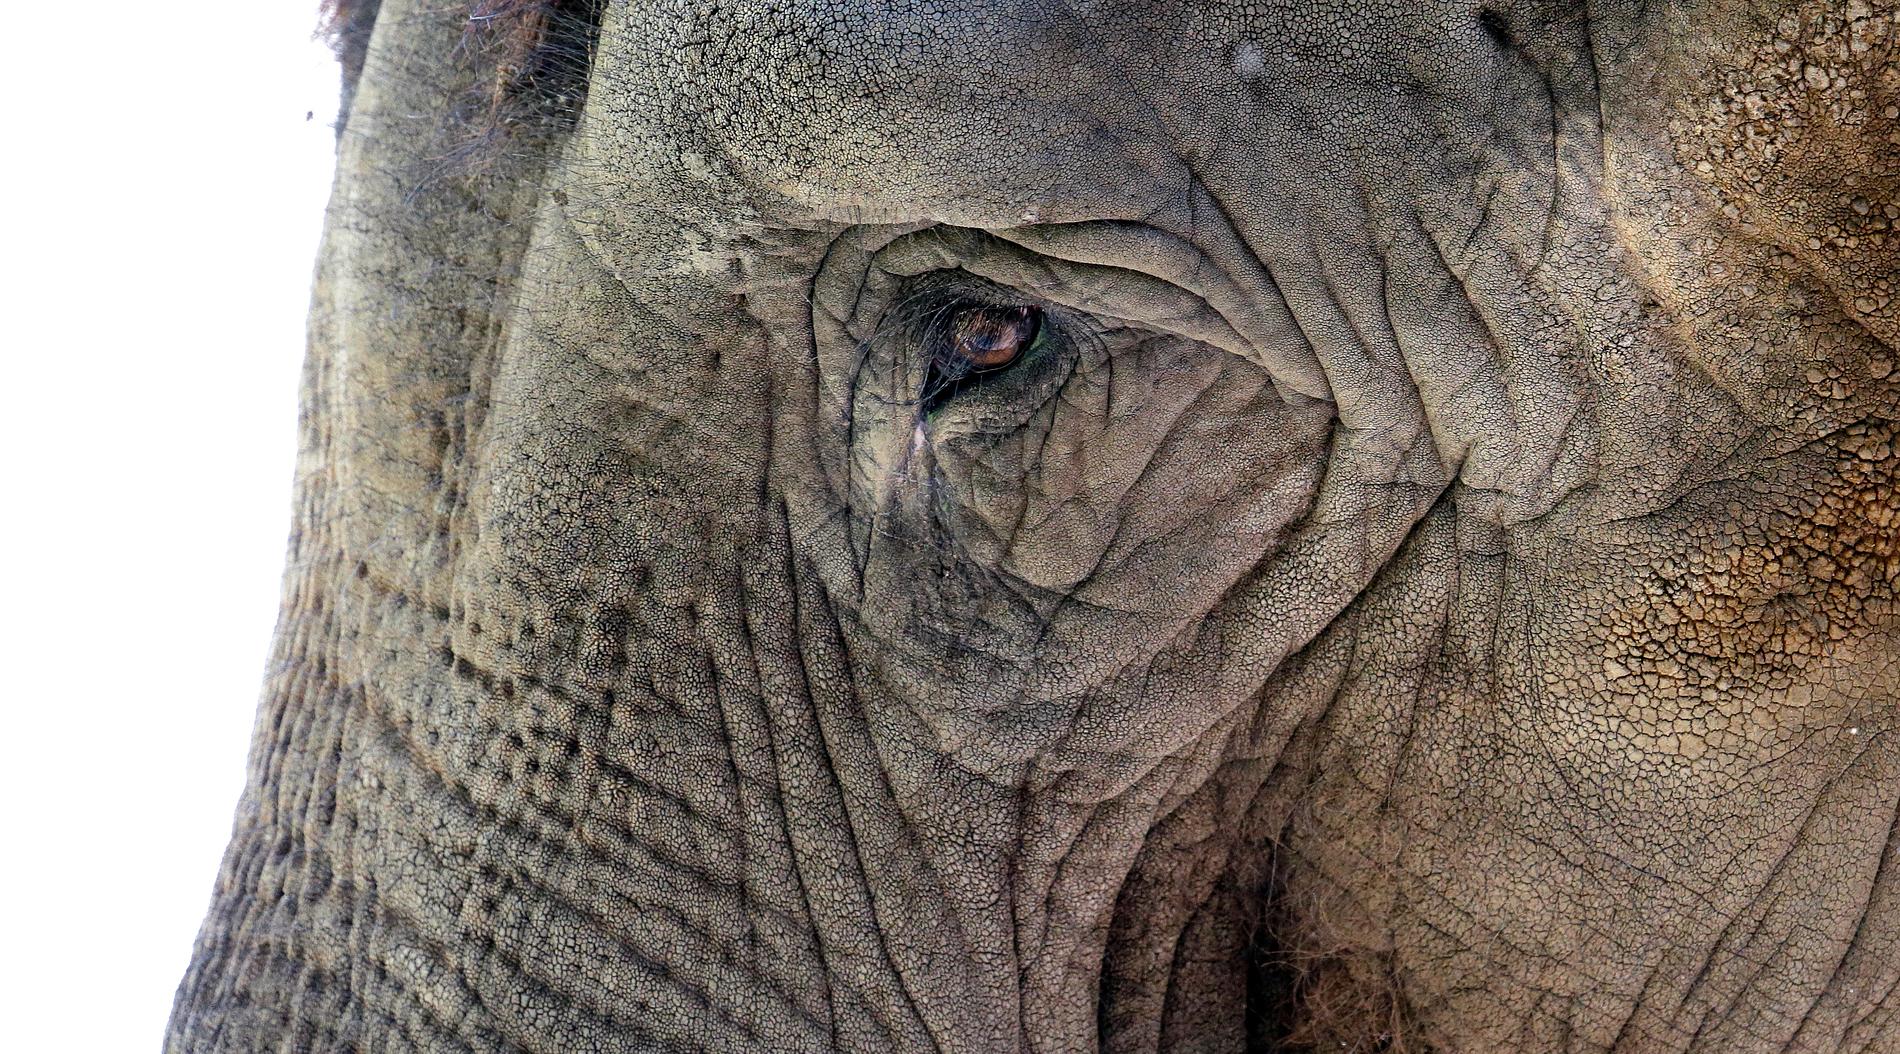 Elefantridning kan orsaka stort lidande för elefanterna